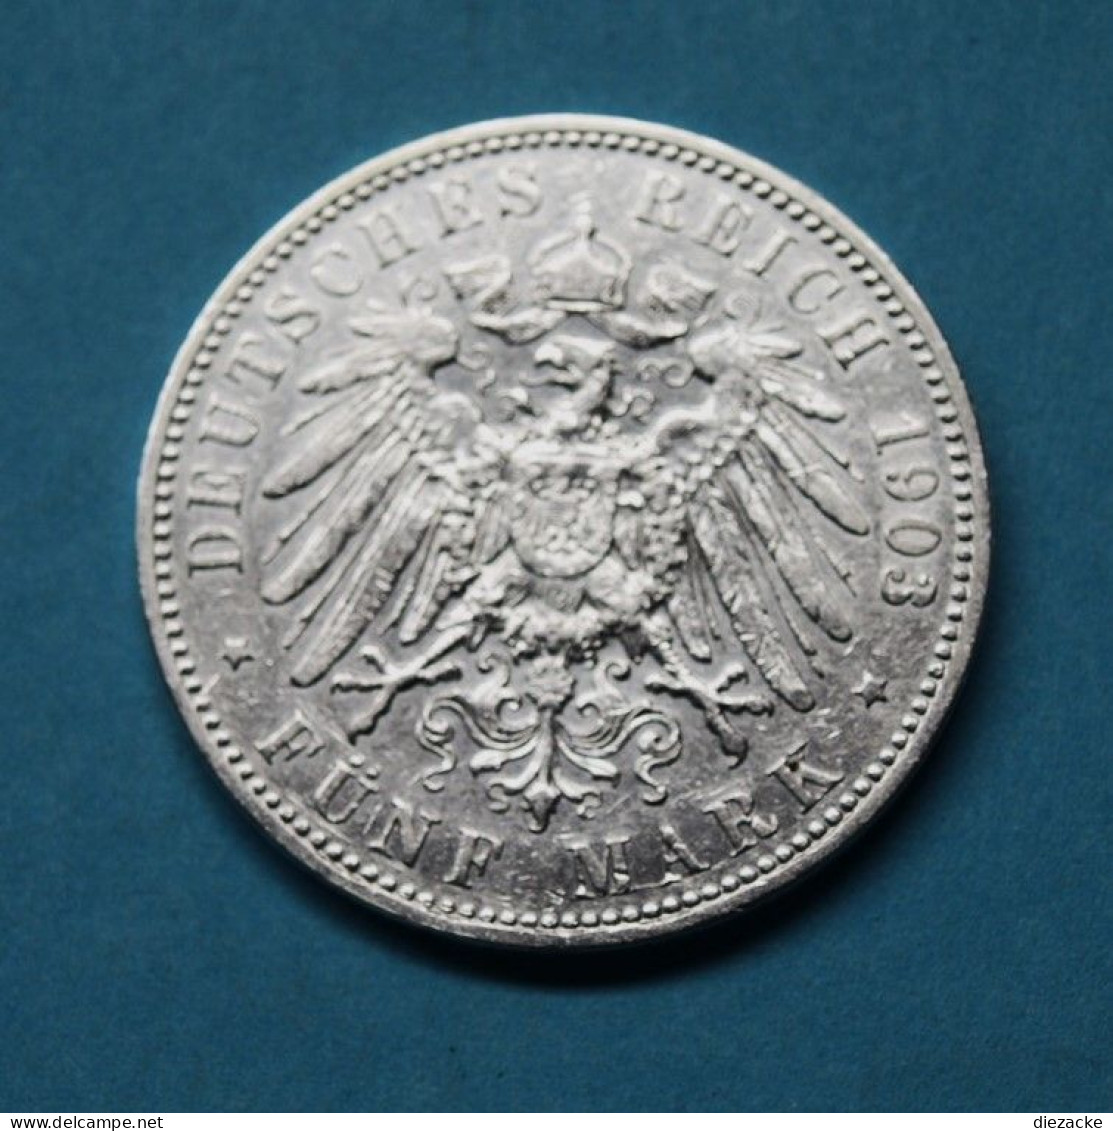 Preussen 1903 5 Mark Wilhelm II. (Fok4/3 - 2, 3 & 5 Mark Silver